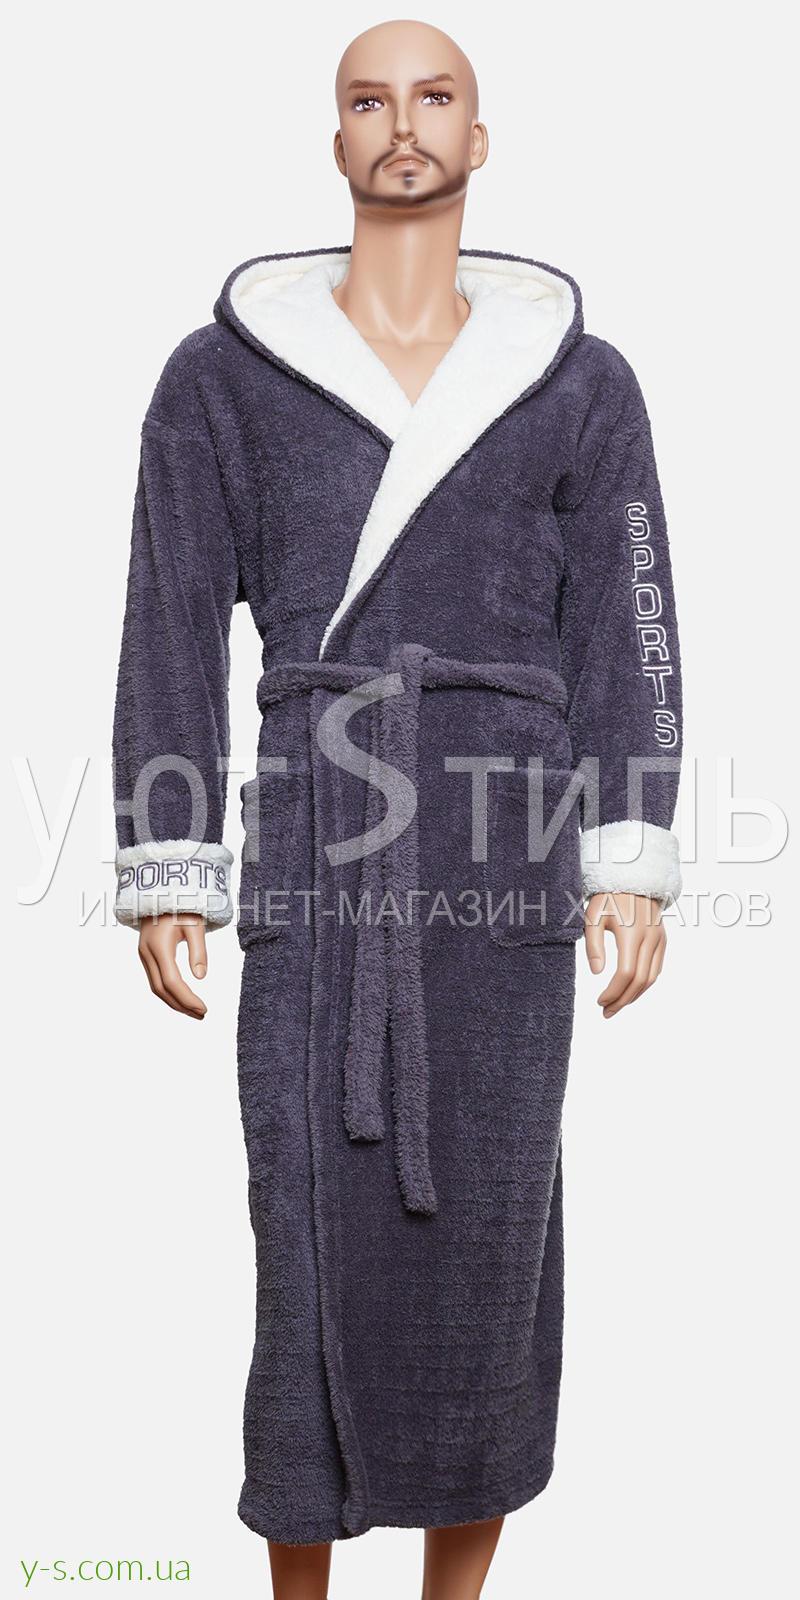 Мужской халат серого цвета WM1727 с надписью 